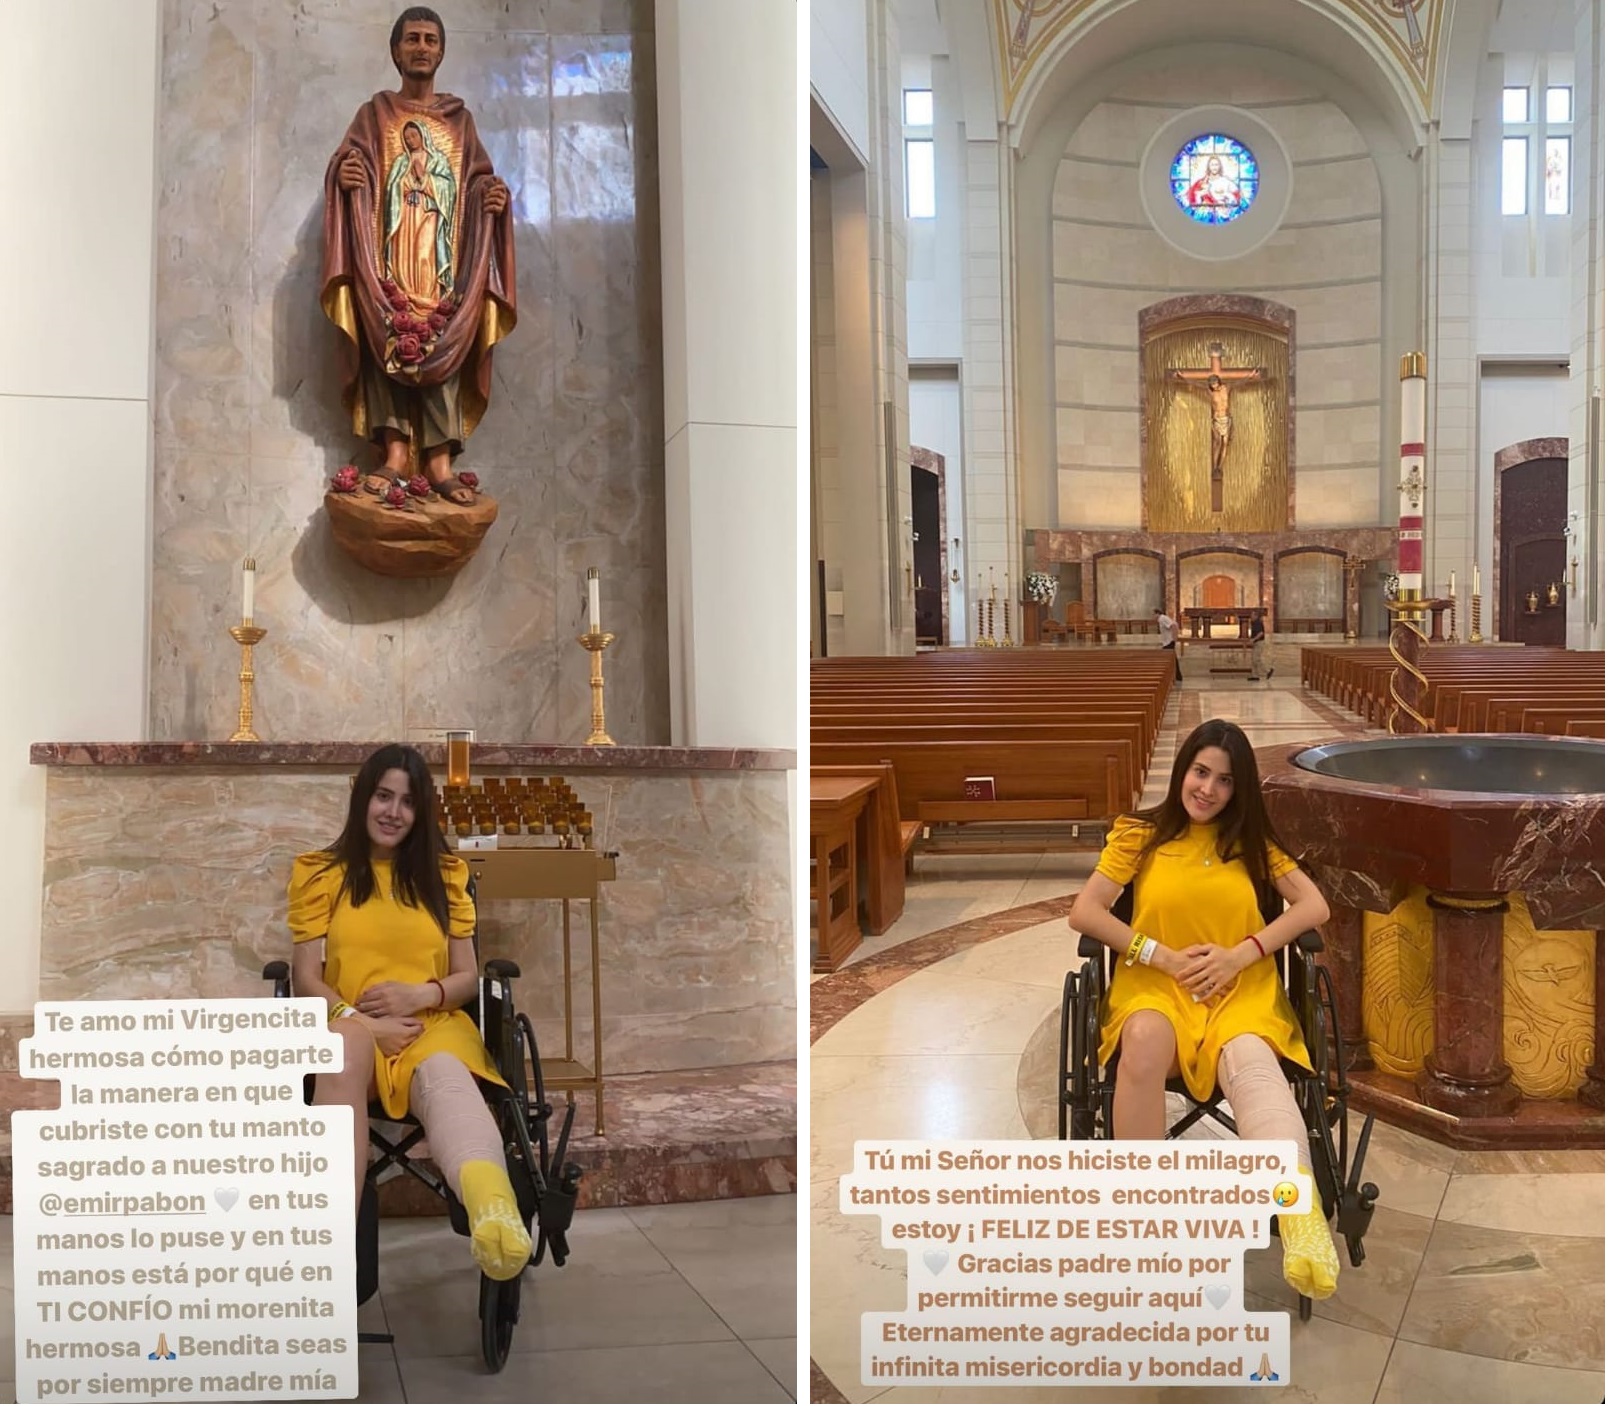 Stefanía visitó una iglesia para agradecer por su salud
(Foto: Instagram/@stefaniadearanda)